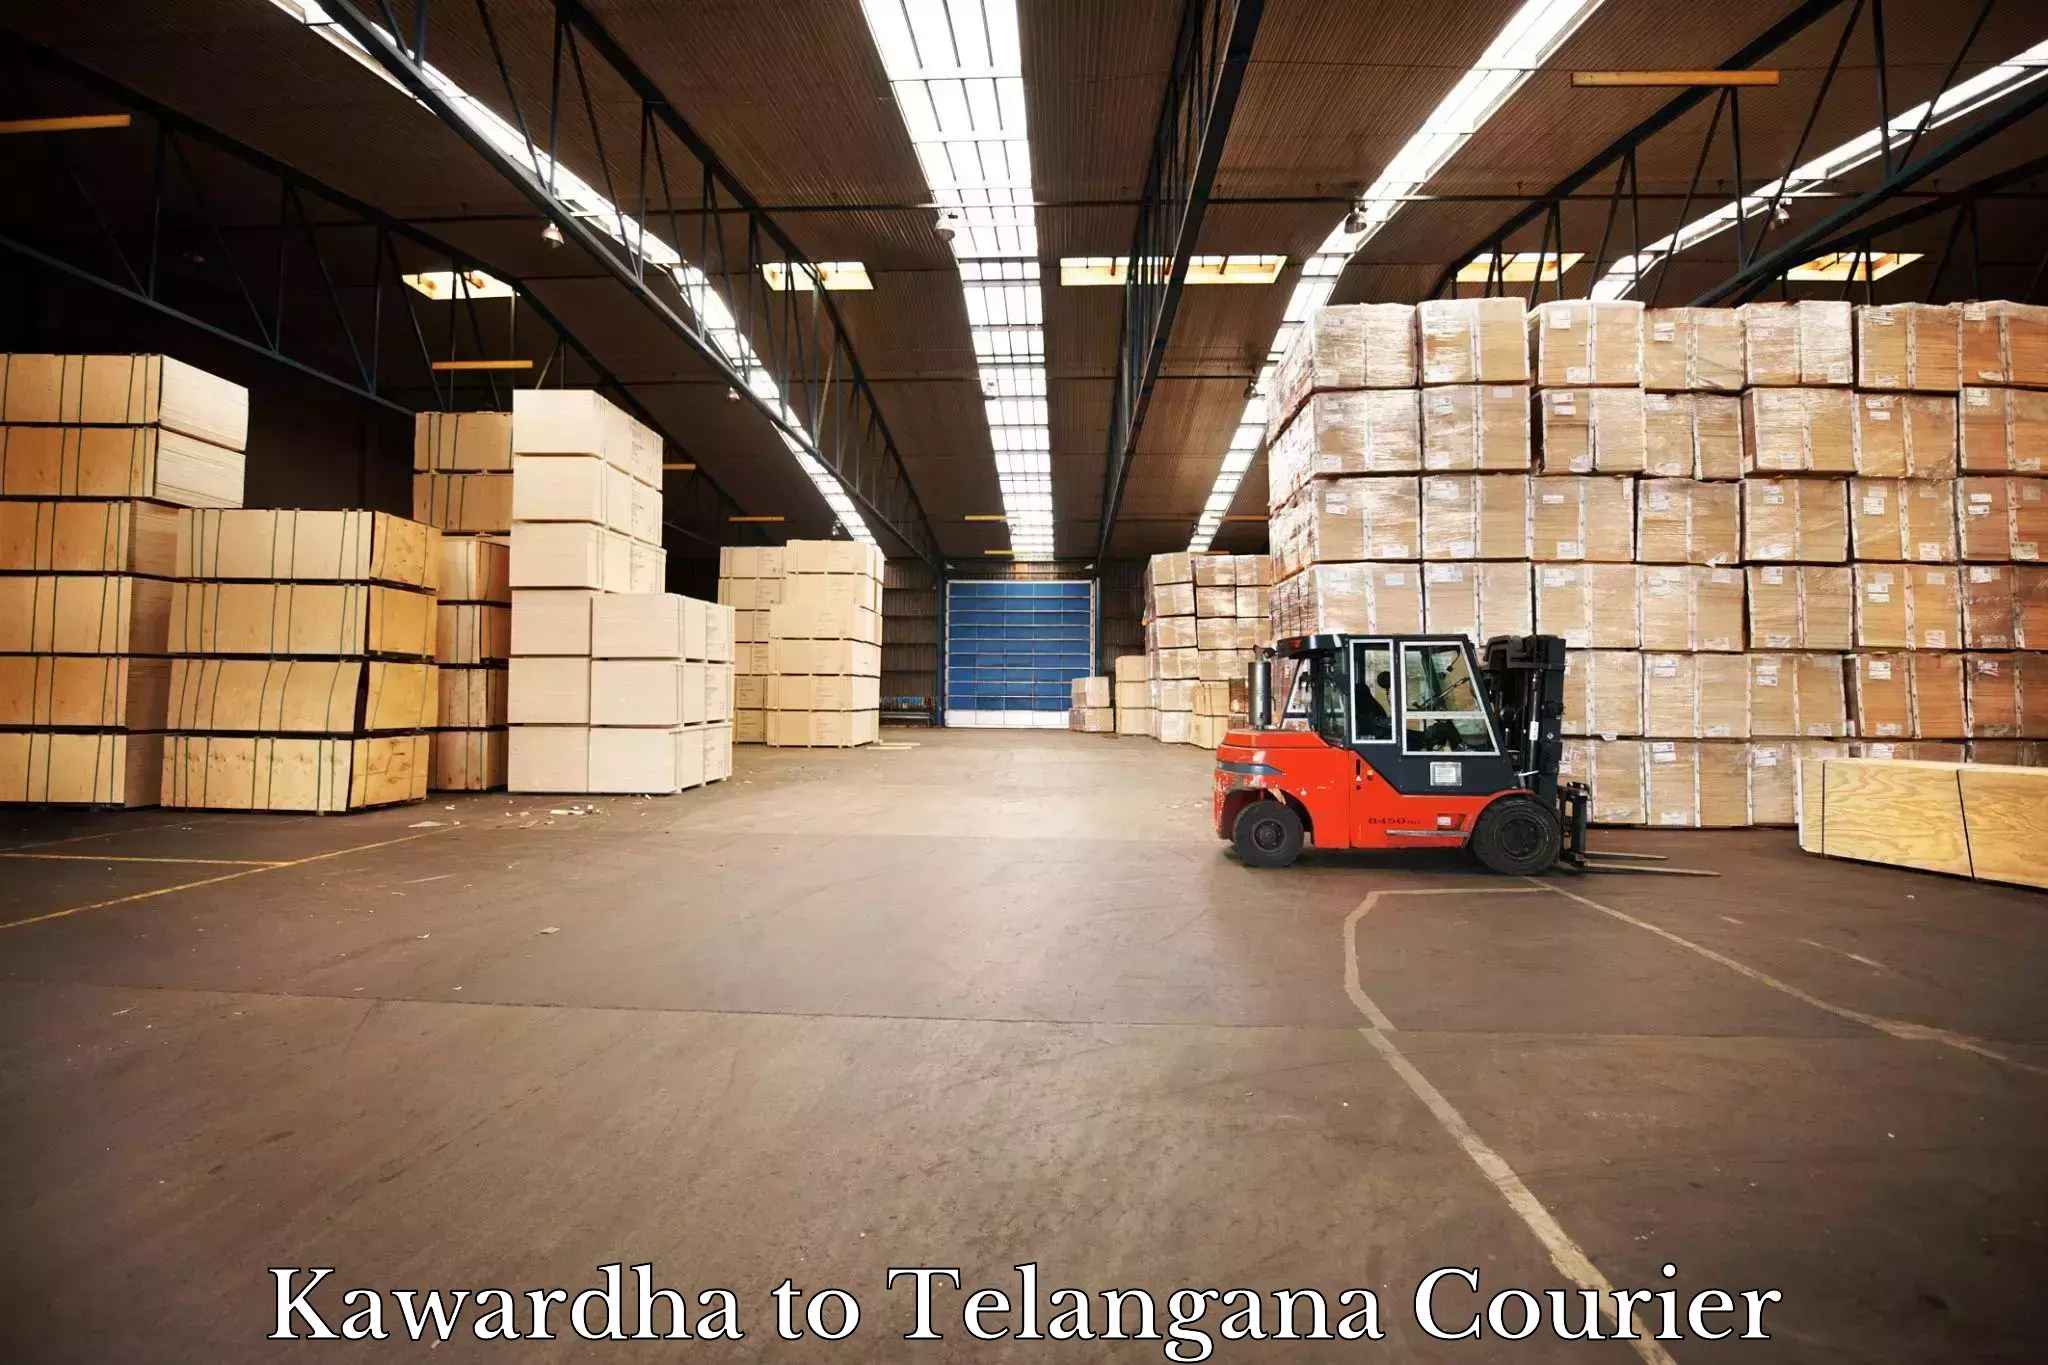 Automated shipping Kawardha to Ibrahimpatnam